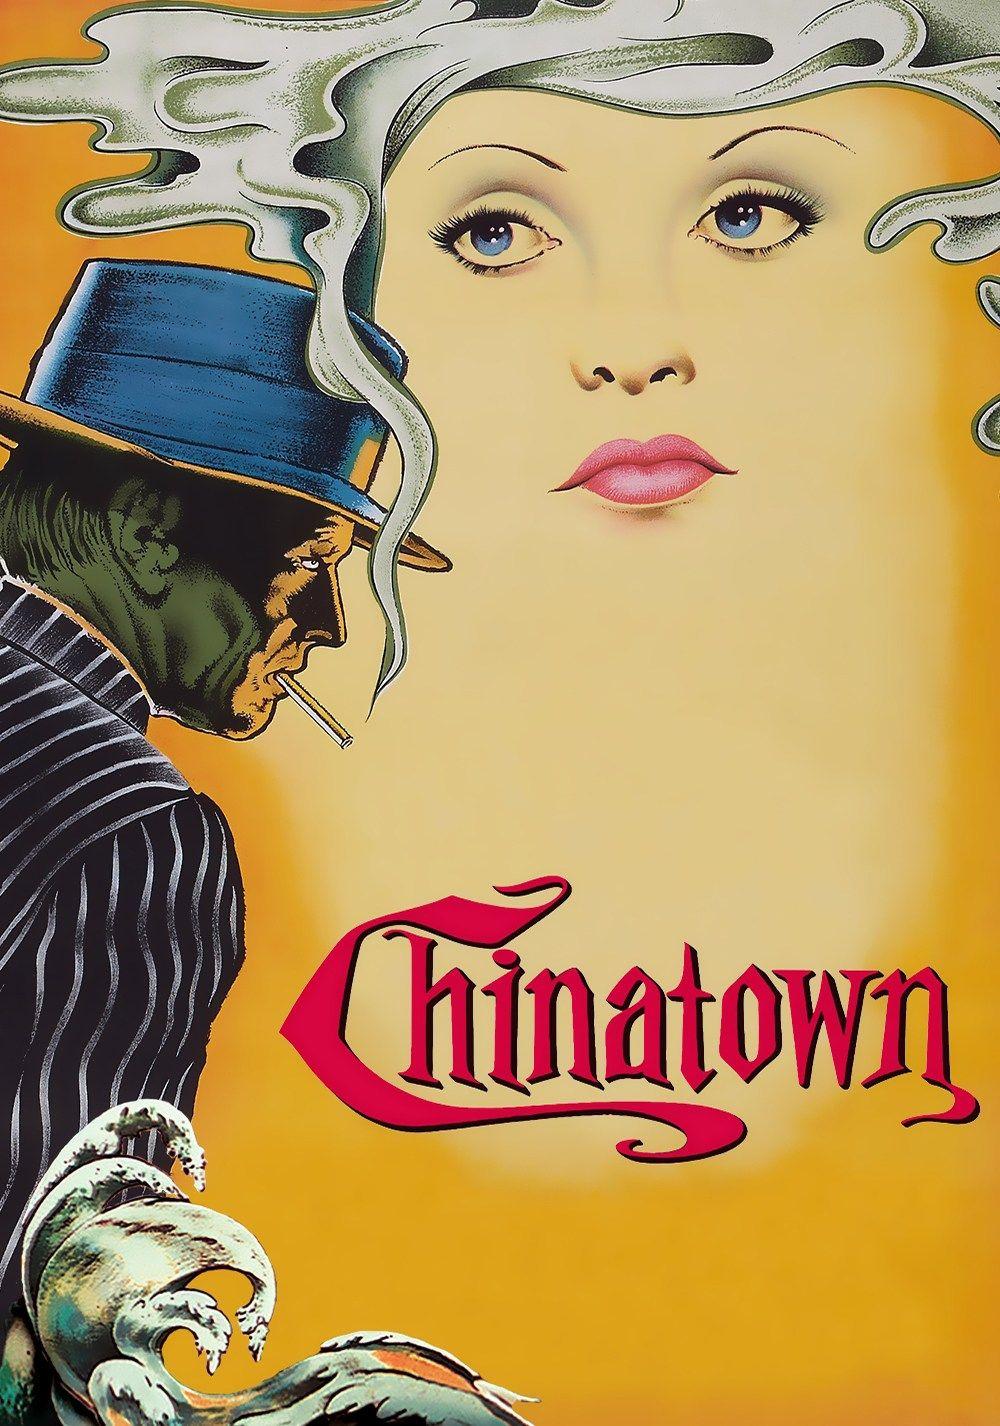 Chinatown Movie Logo - Contextual Power Plays in Roman Polanski's Chinatown